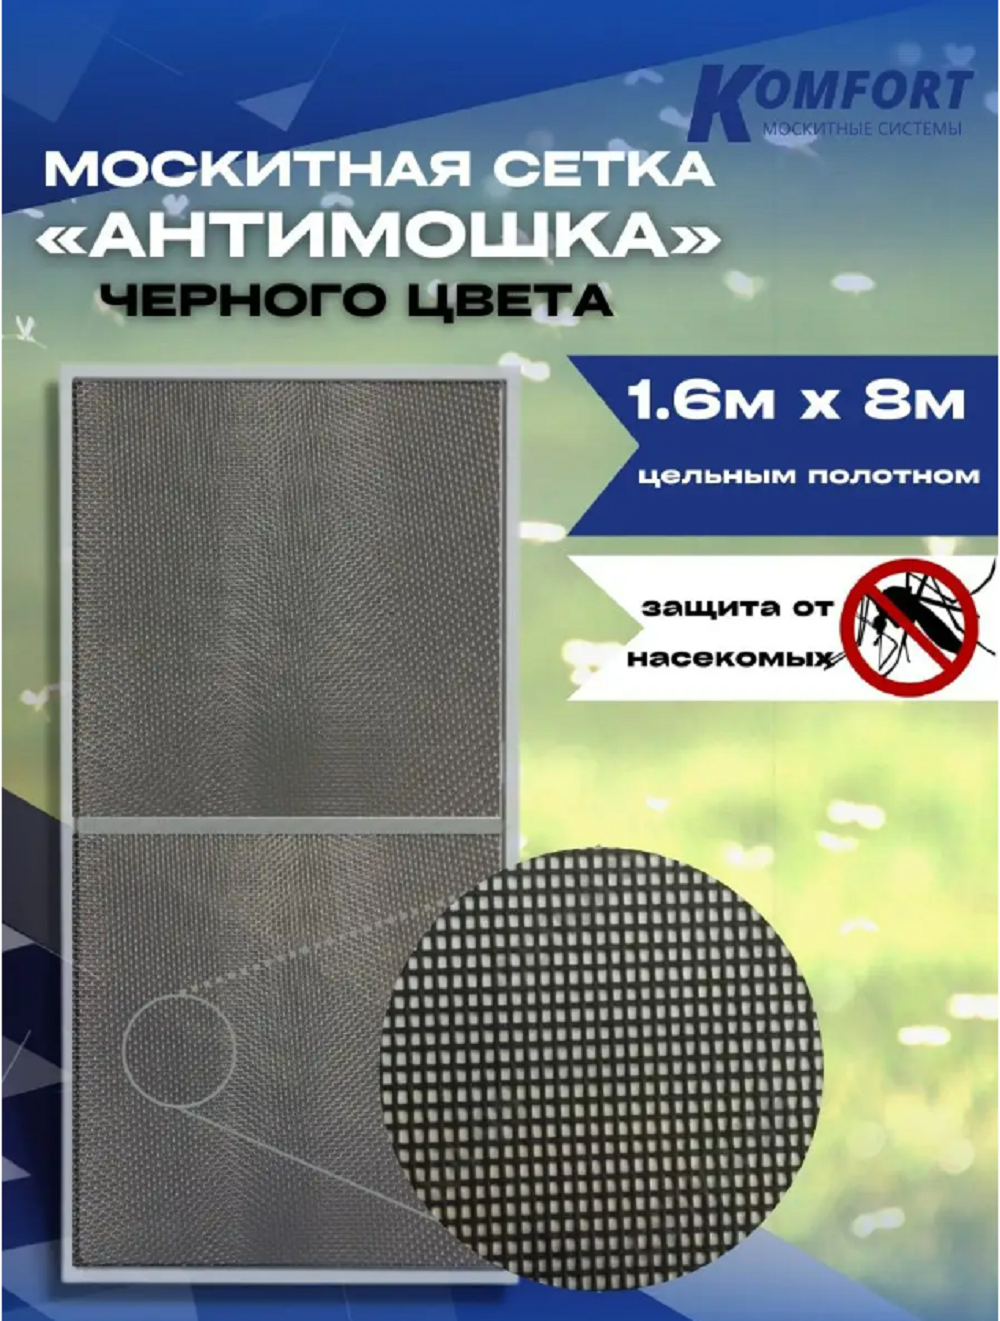 Москитная сетка Komfort МС000178черн 800 x 160 см